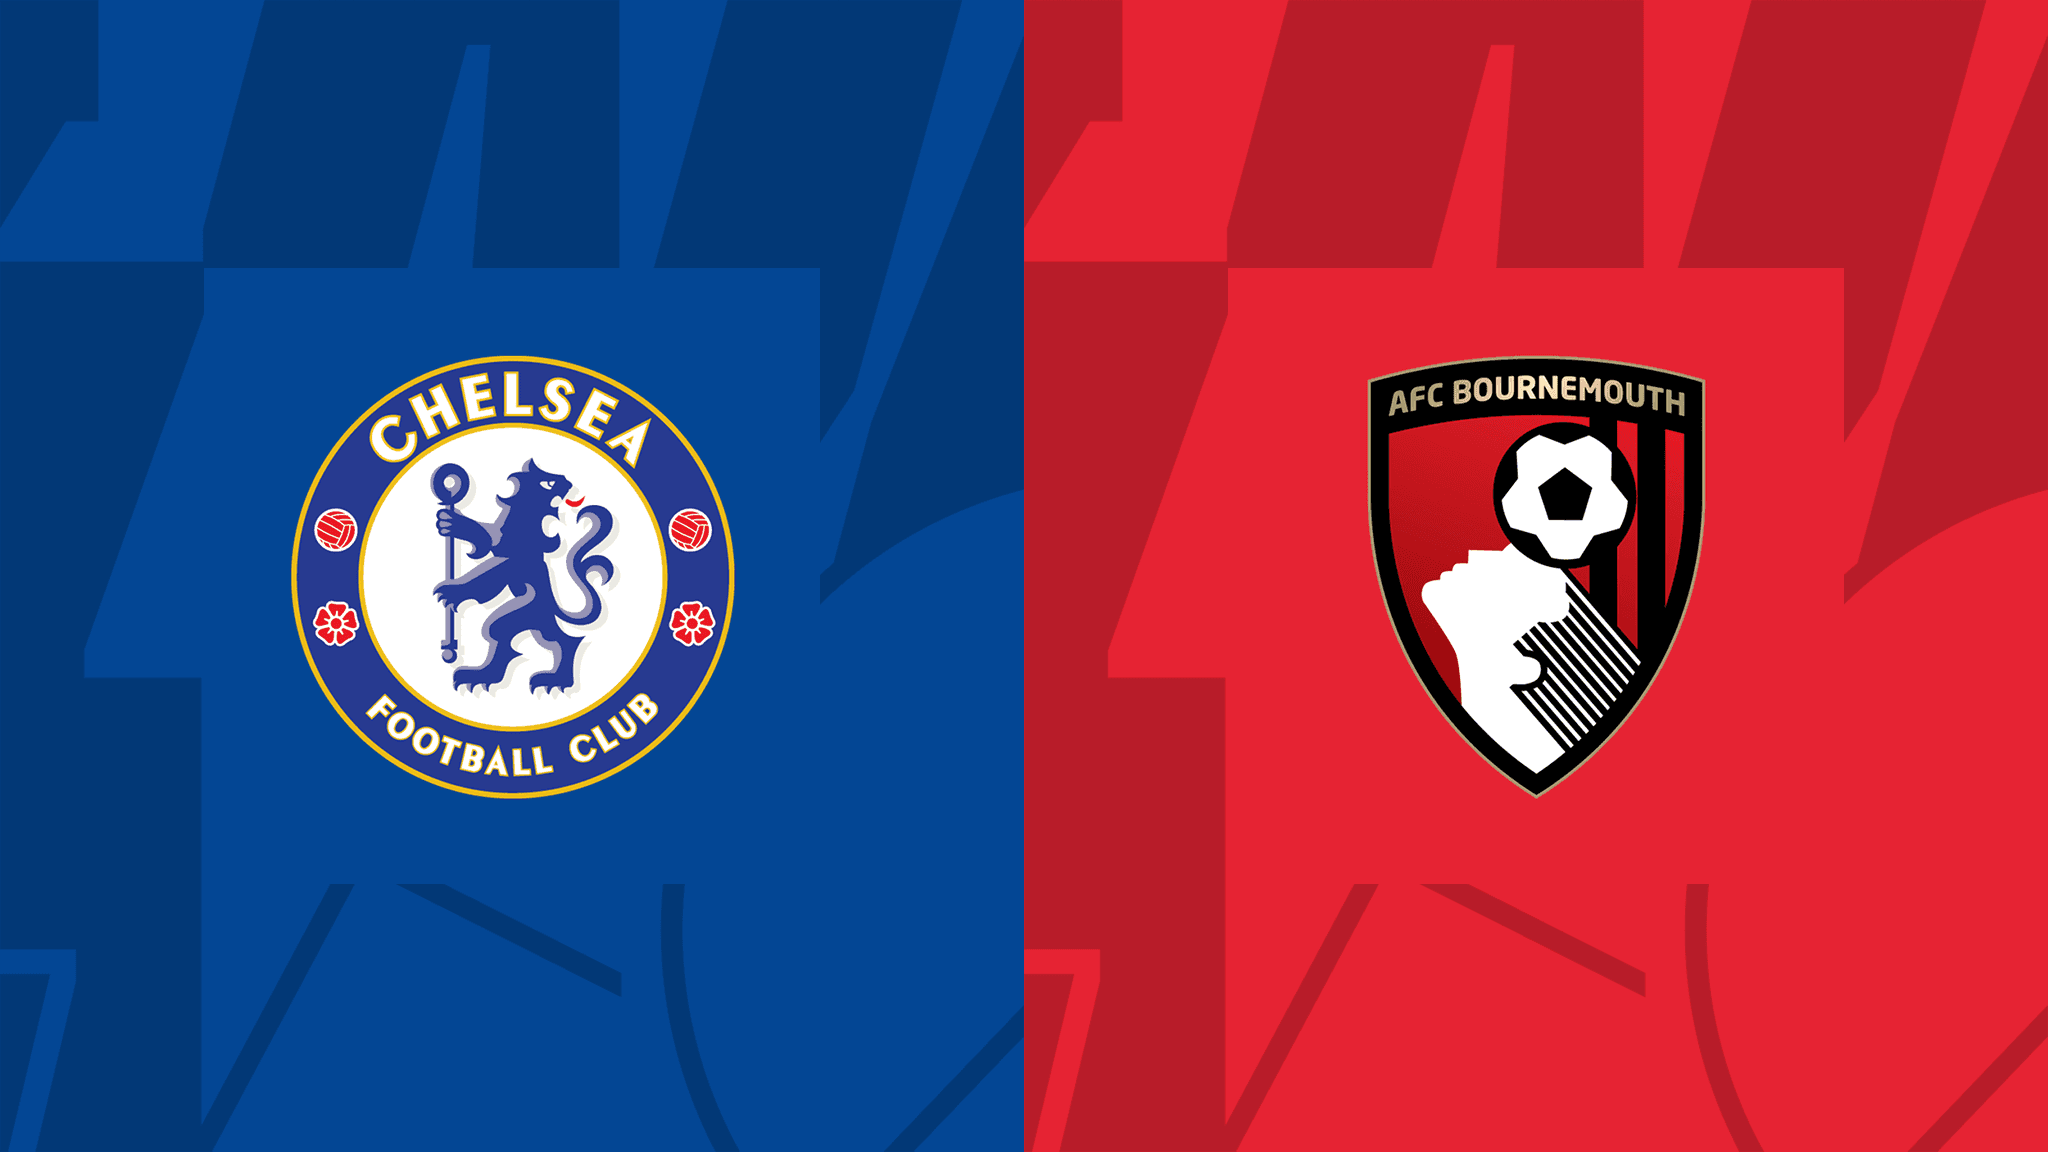 مشاهدة مباراة تشيلسي و بورنموث بث مباشر 27/12/2022 Chelsea vs AFC Bournemouth